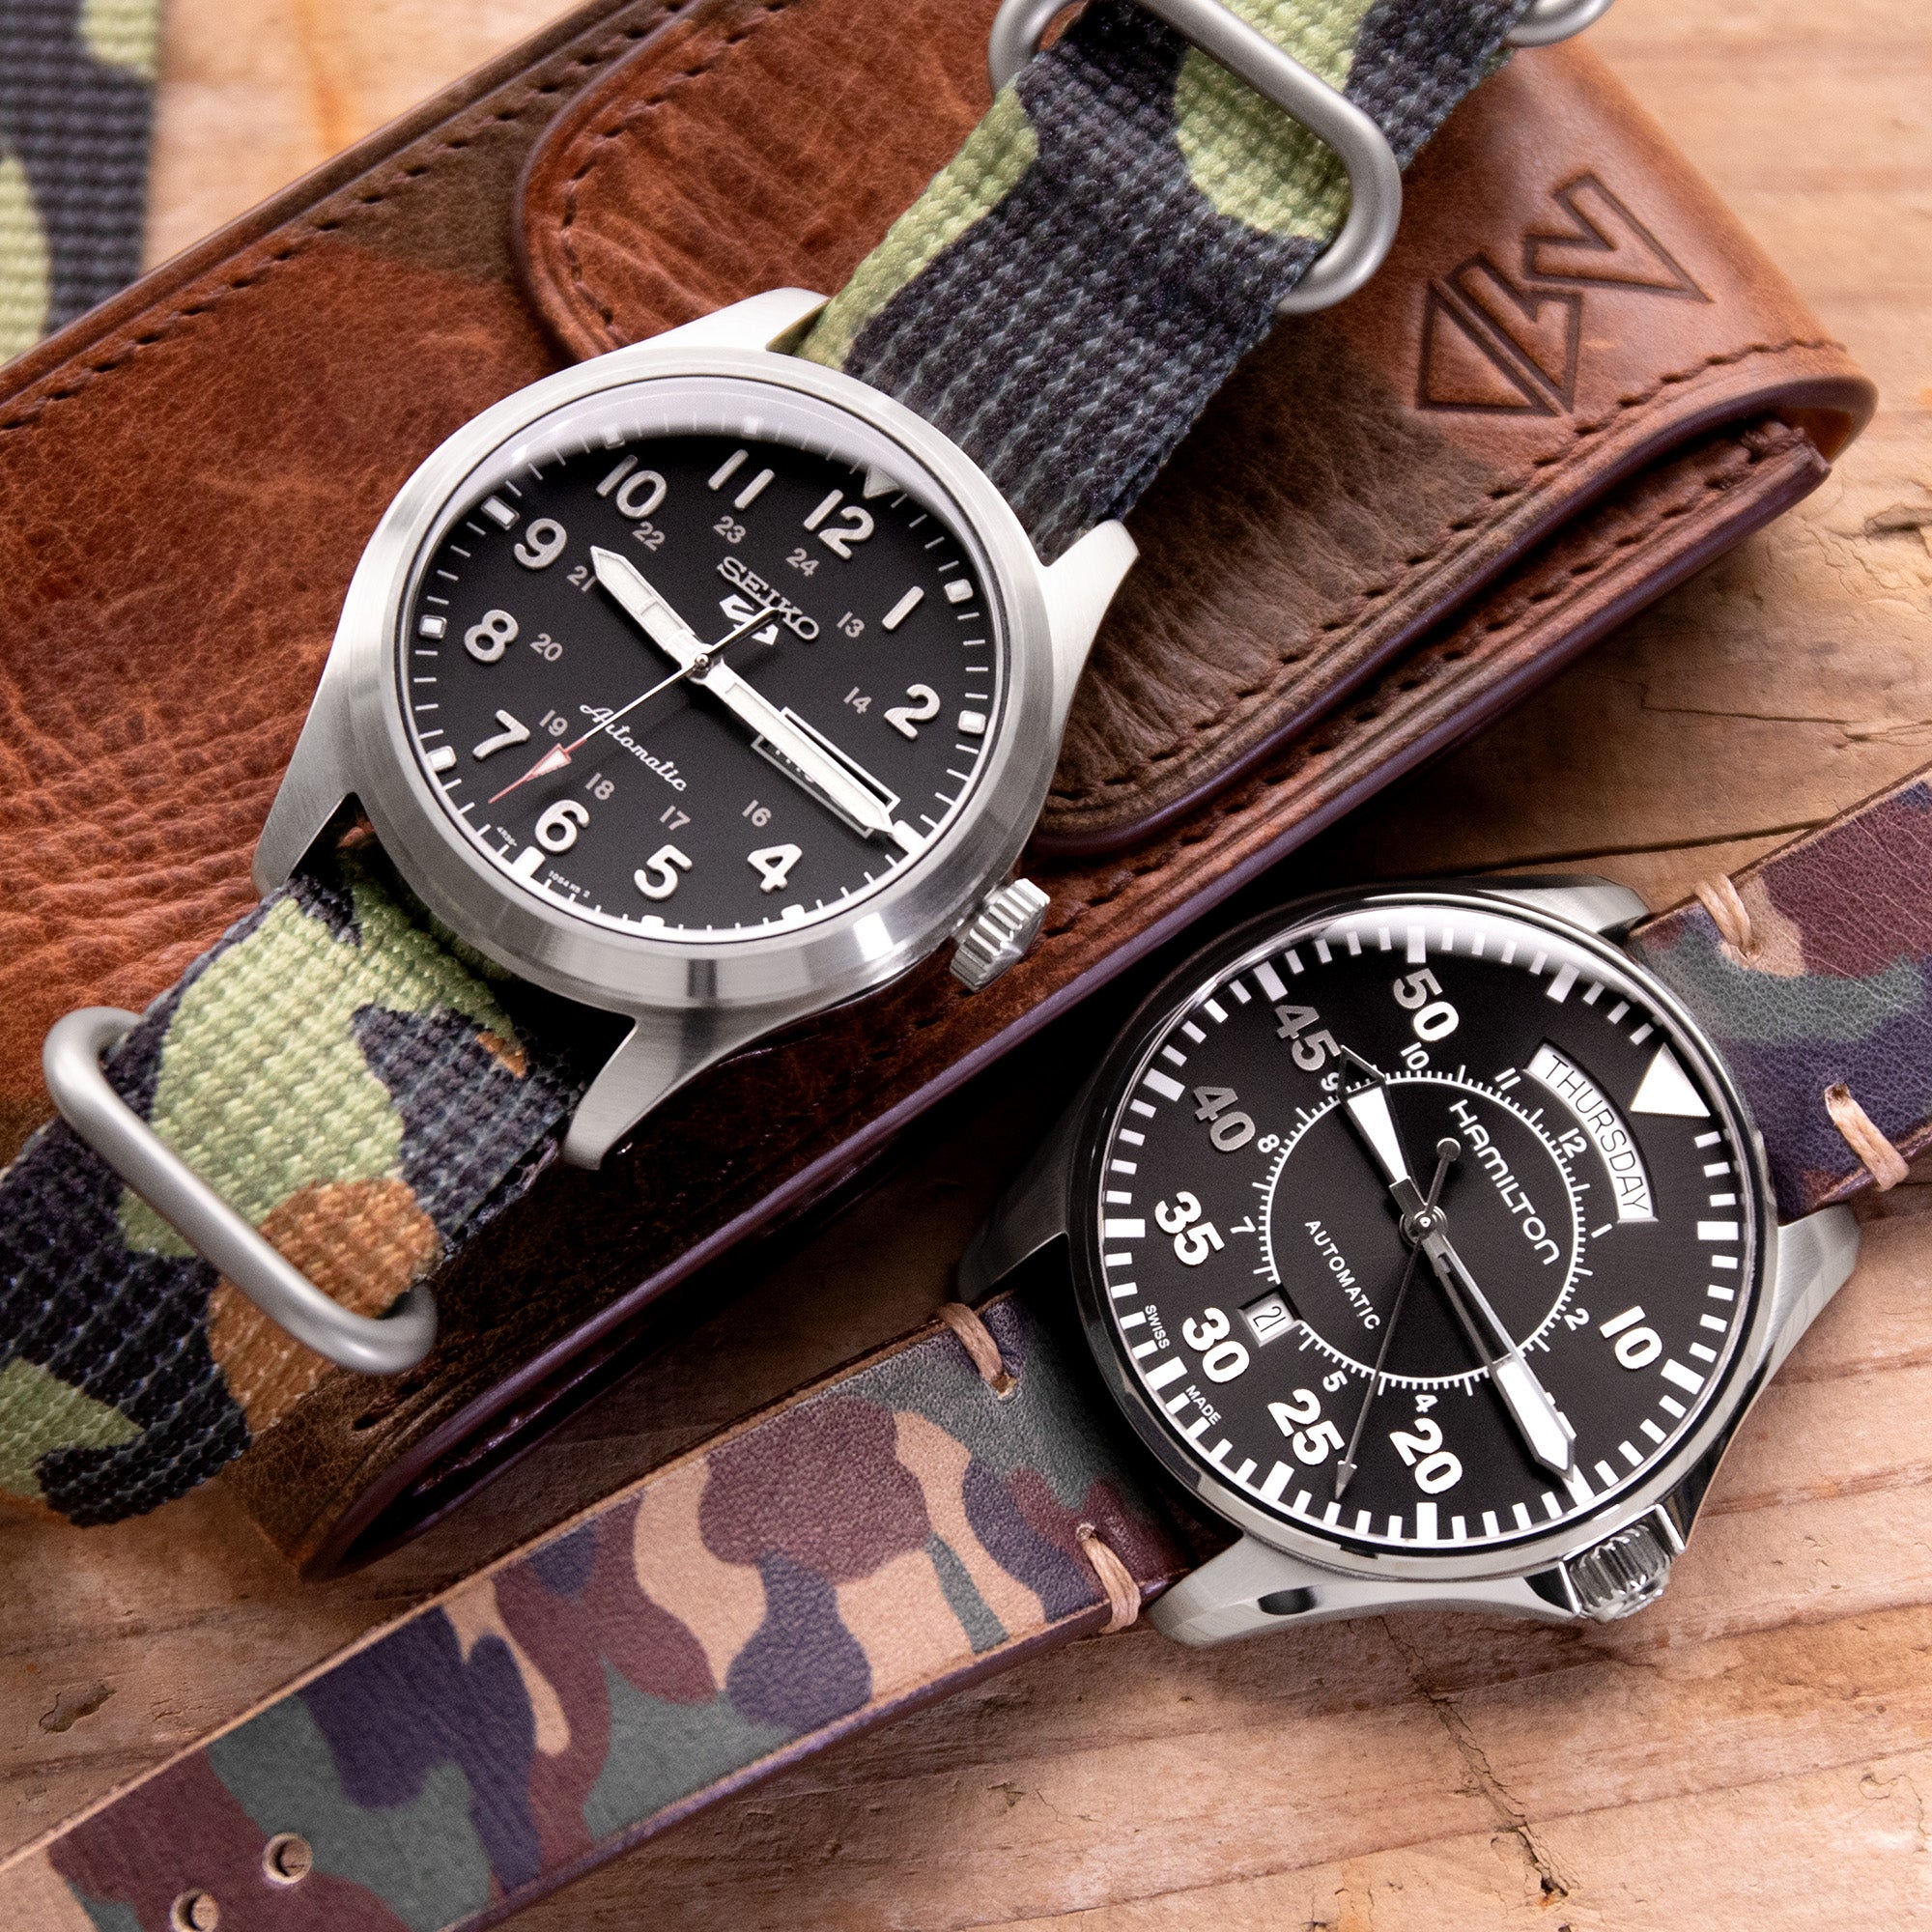 Seiko精工 5 Sports 野外手錶 和 Hamilton漢密爾頓 卡其野戰系列腕錶 搭配 太空人腕時計TW的迷彩錶帶